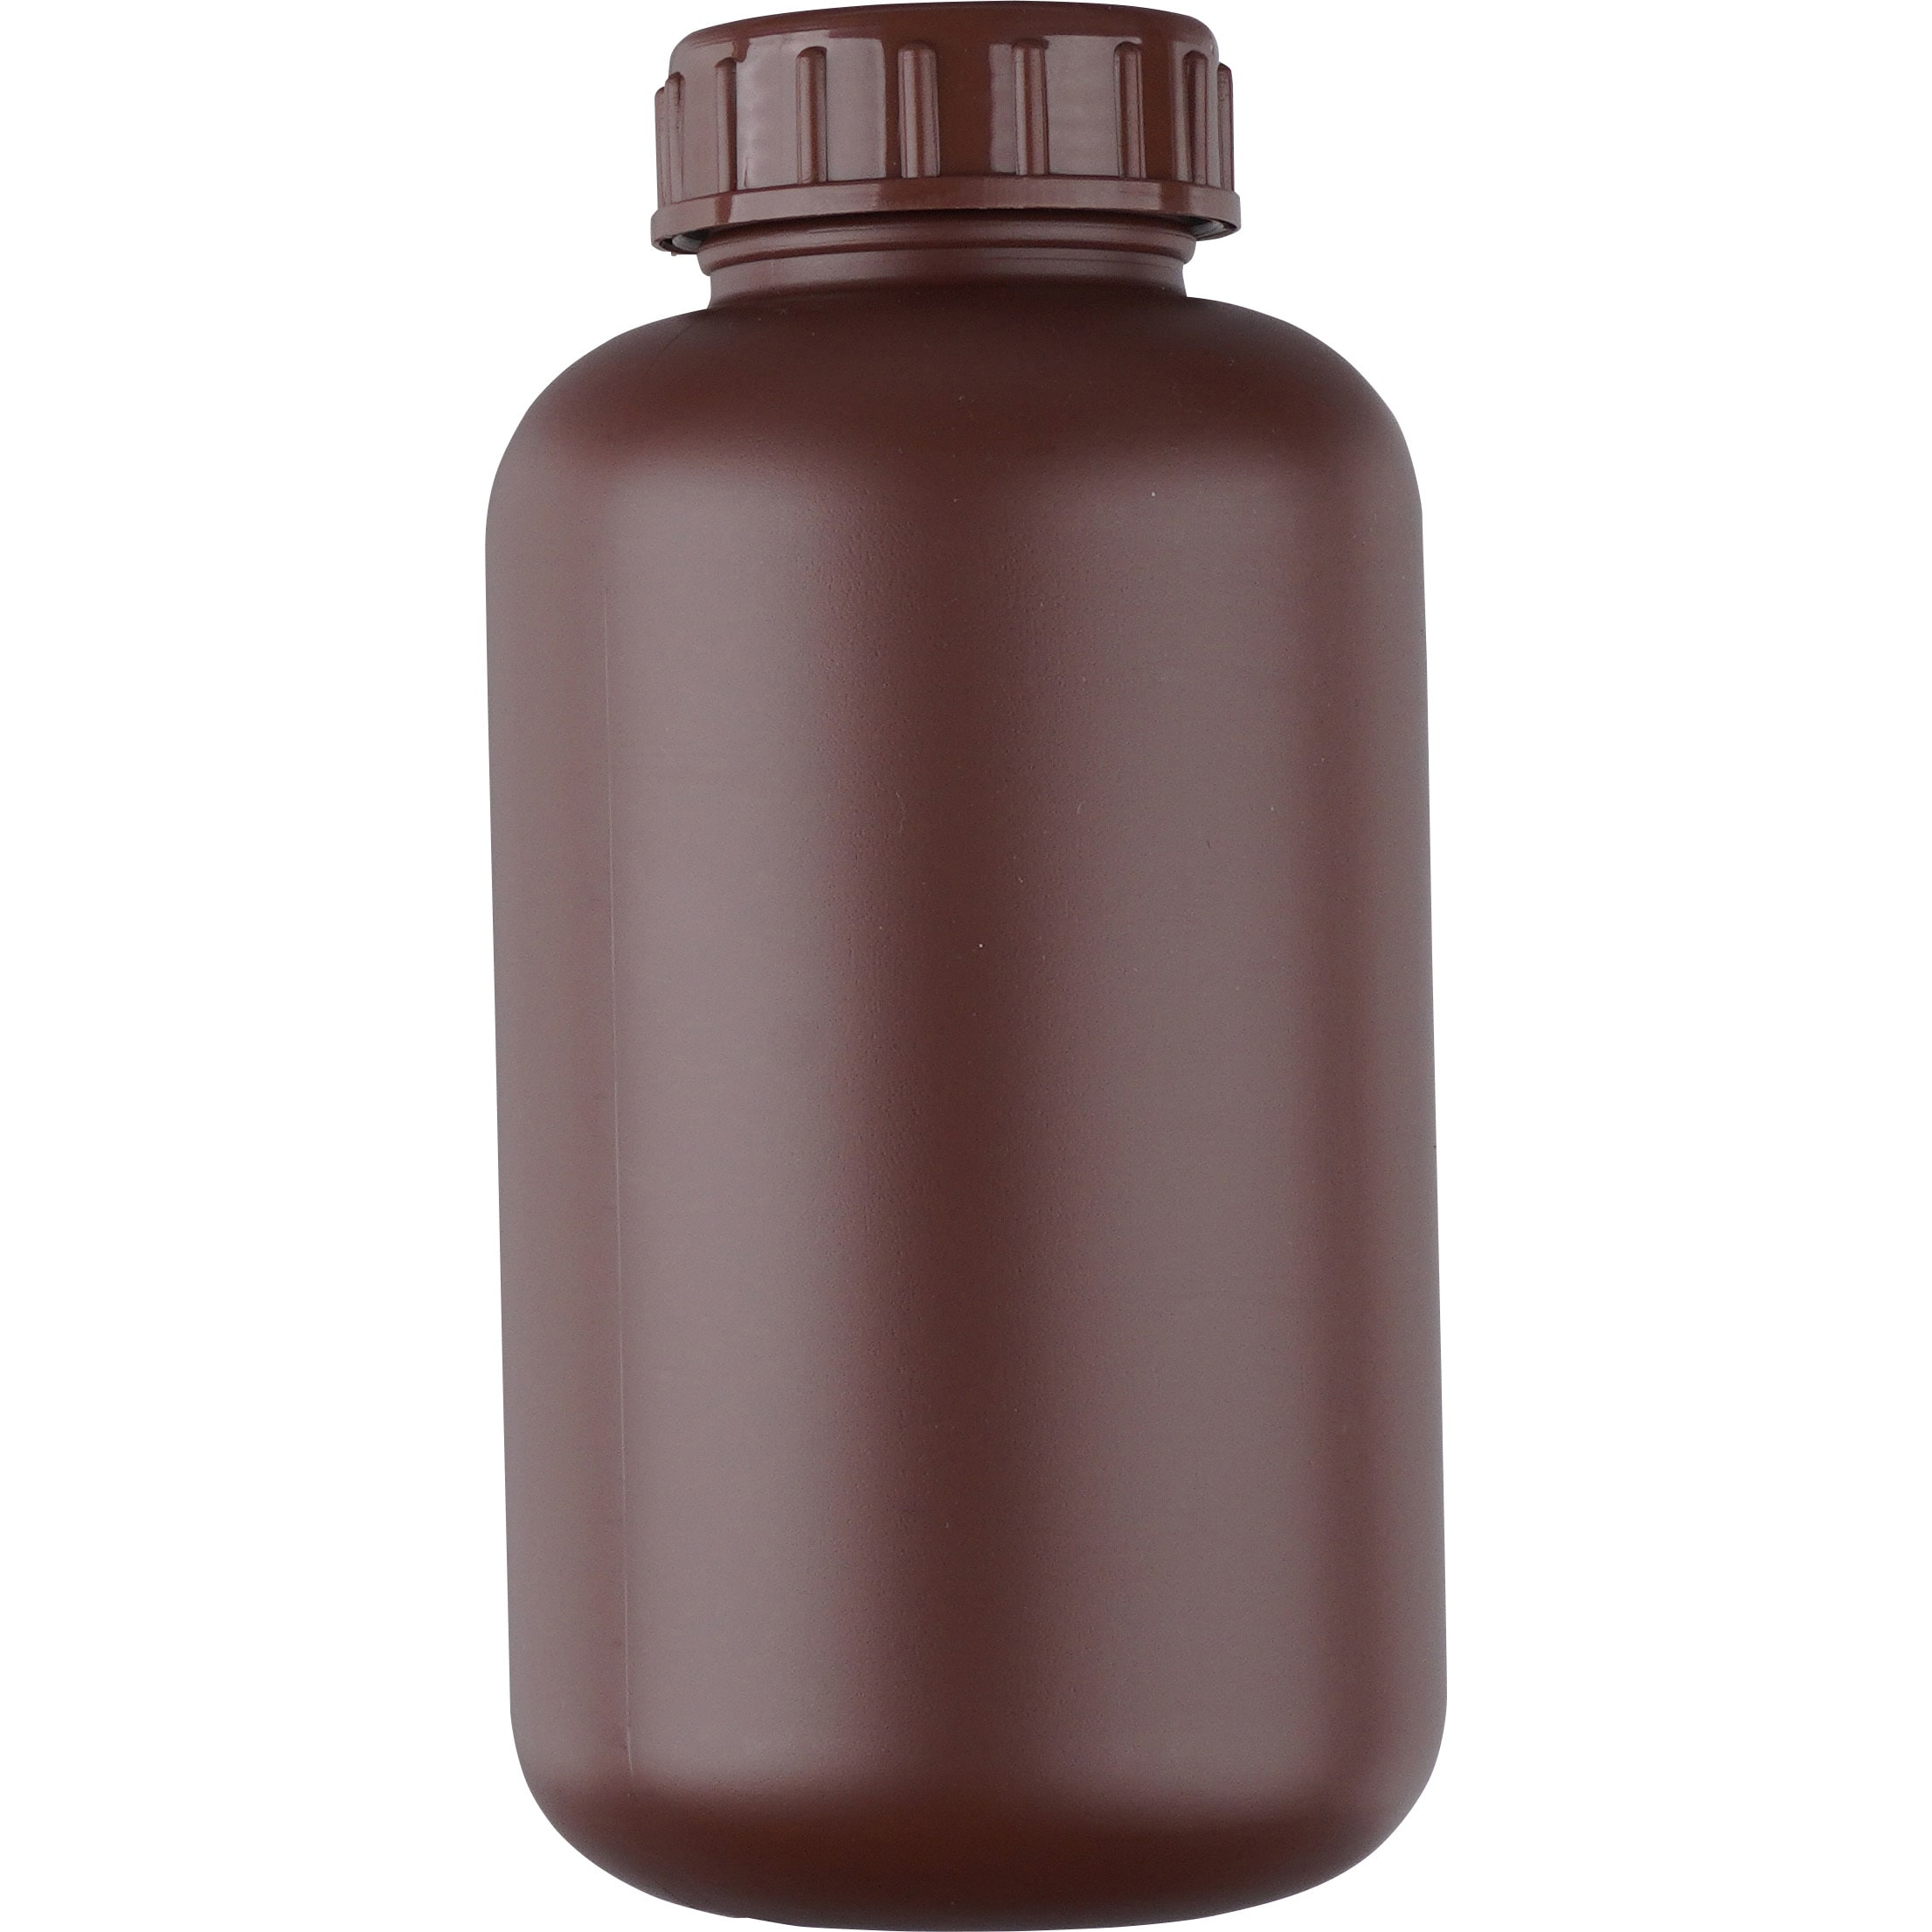 1032-24 標準規格瓶 丸型広口(遮光) 1本 NIKKO(ニッコーハンセン